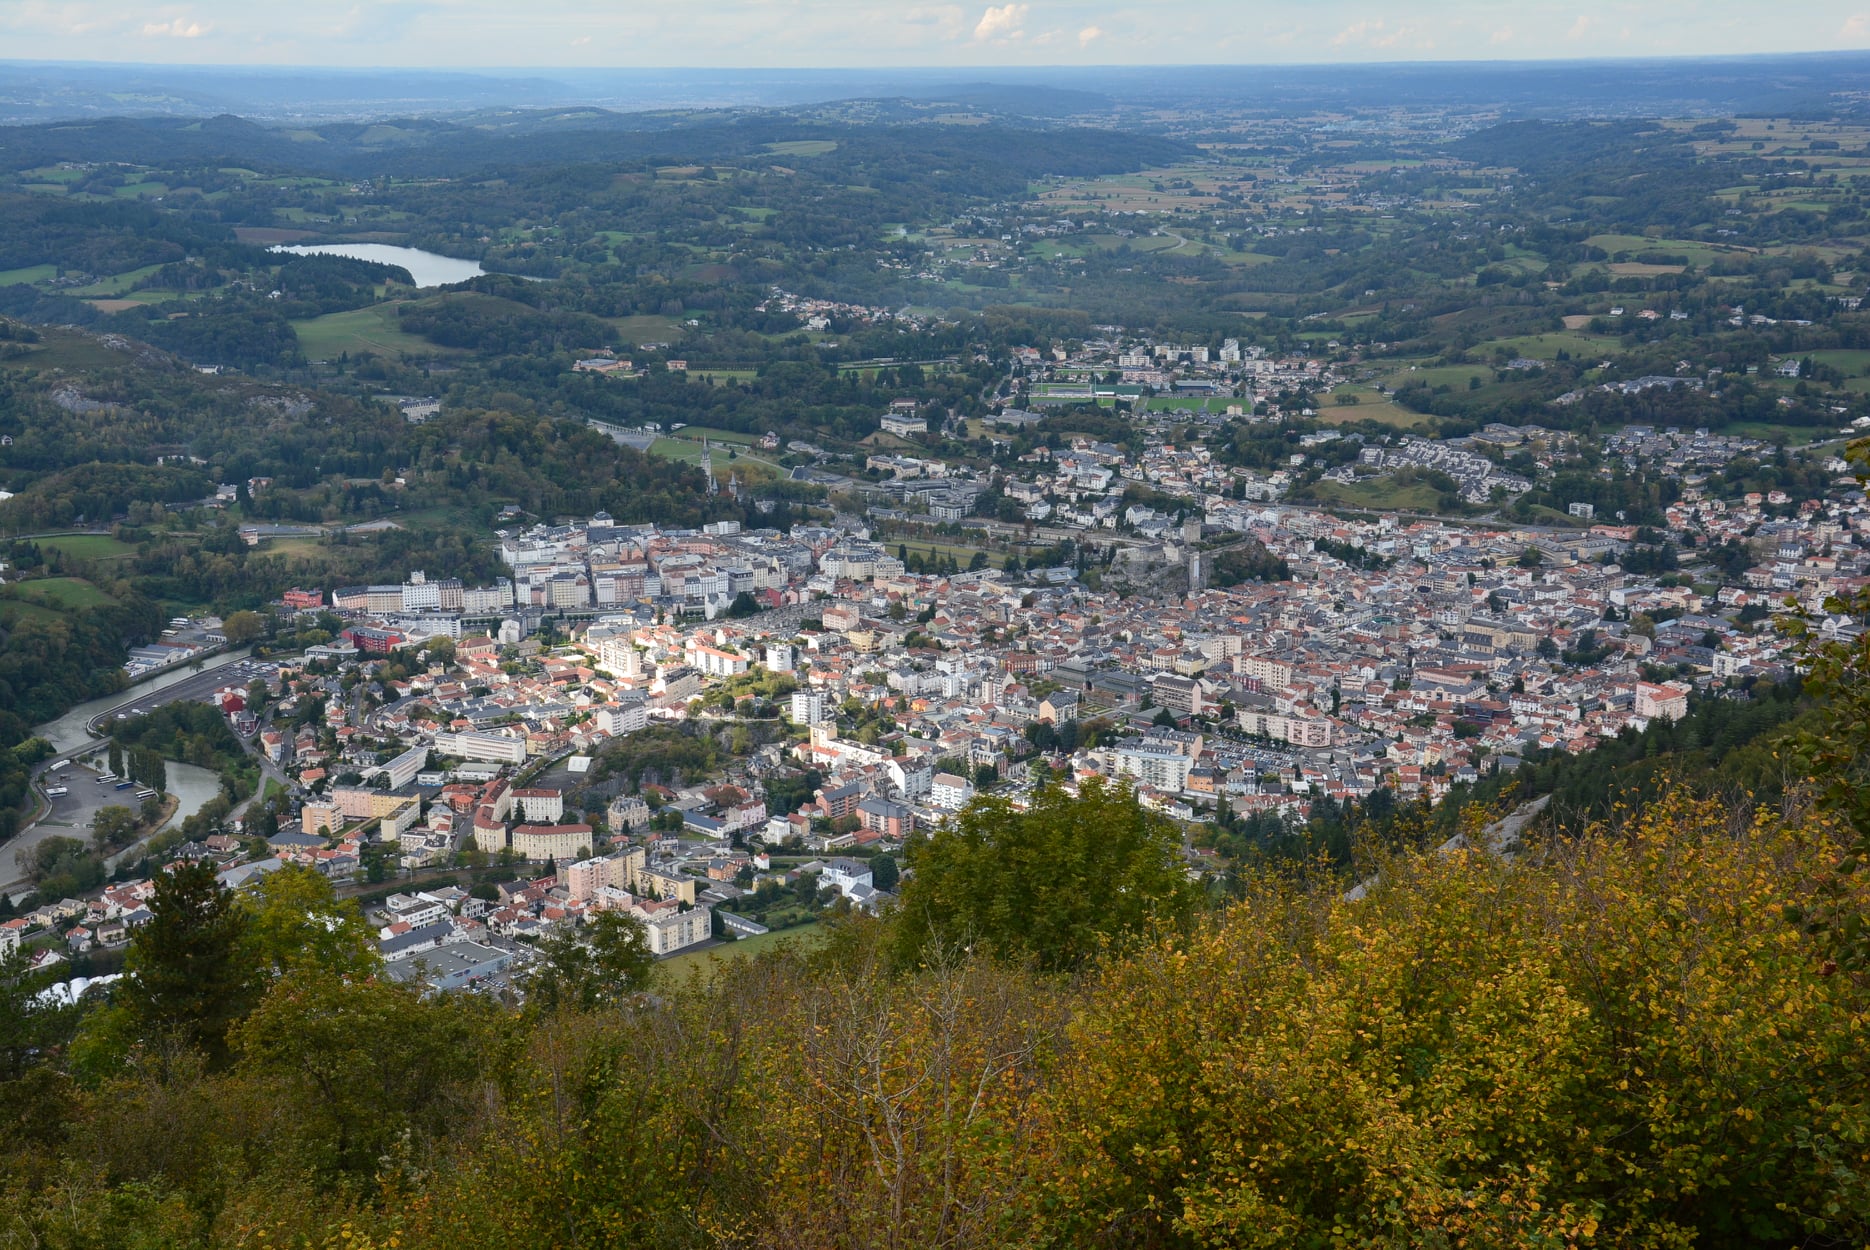 A csúcson található obszervatóriumból kivételes panoráma vár a látogatóra: Lourdes, a Lavedan és Argelès-Gazost, Tarbes, Lannemezan, Pau és a Pireneusok teljes középső hegysége.